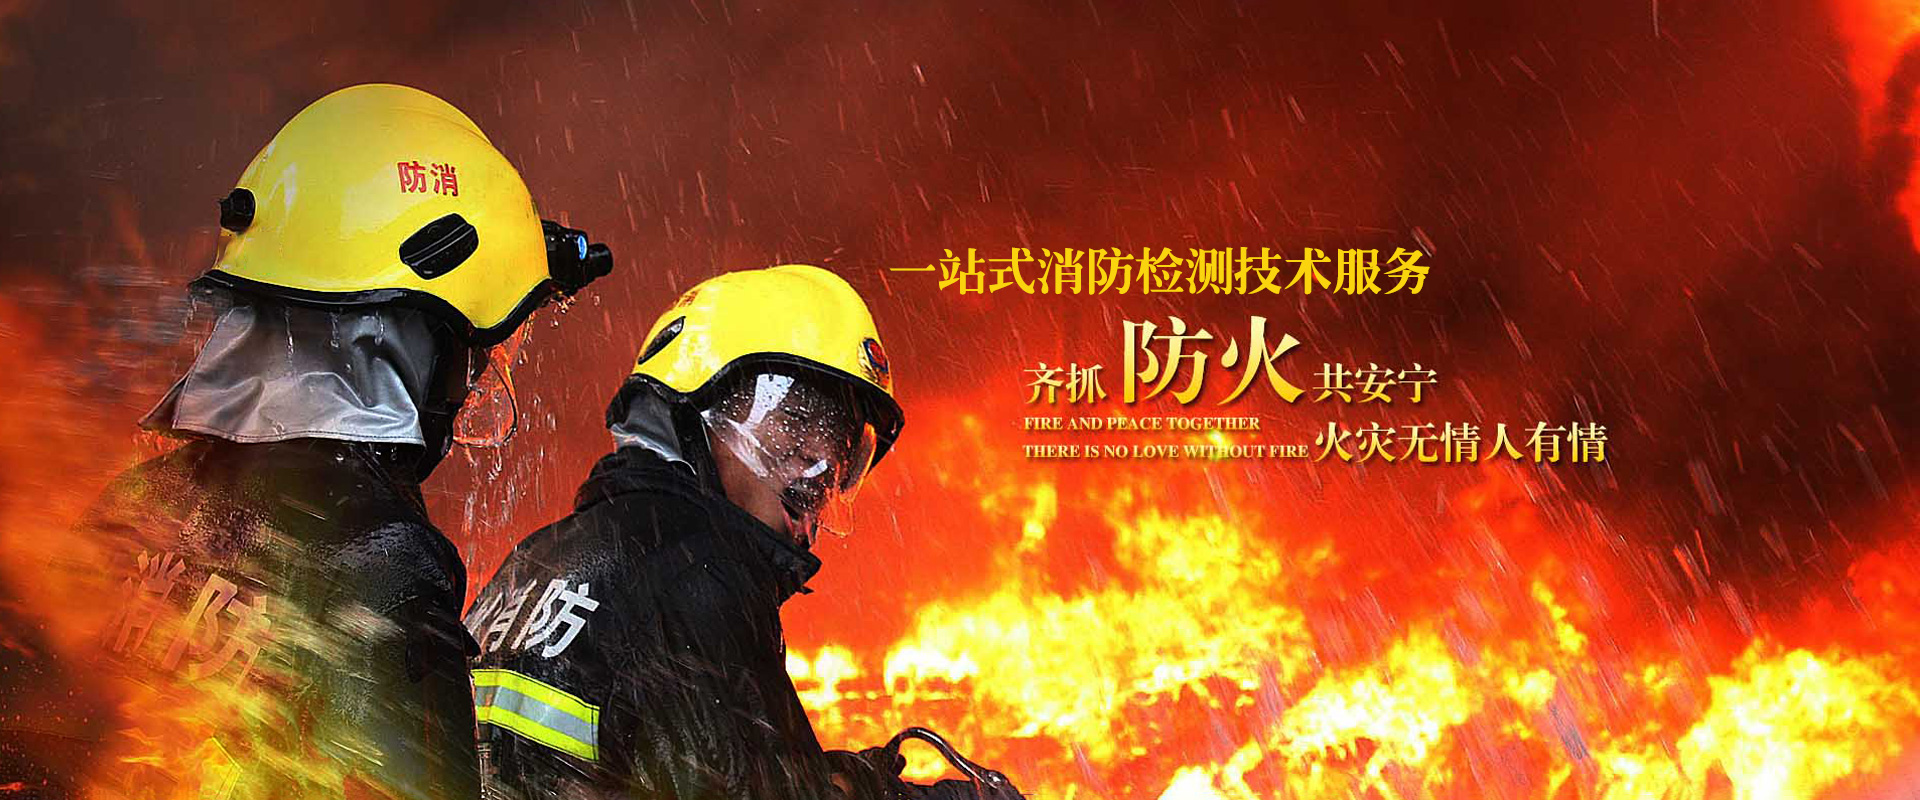 贵州消防检测技术服务有限公司